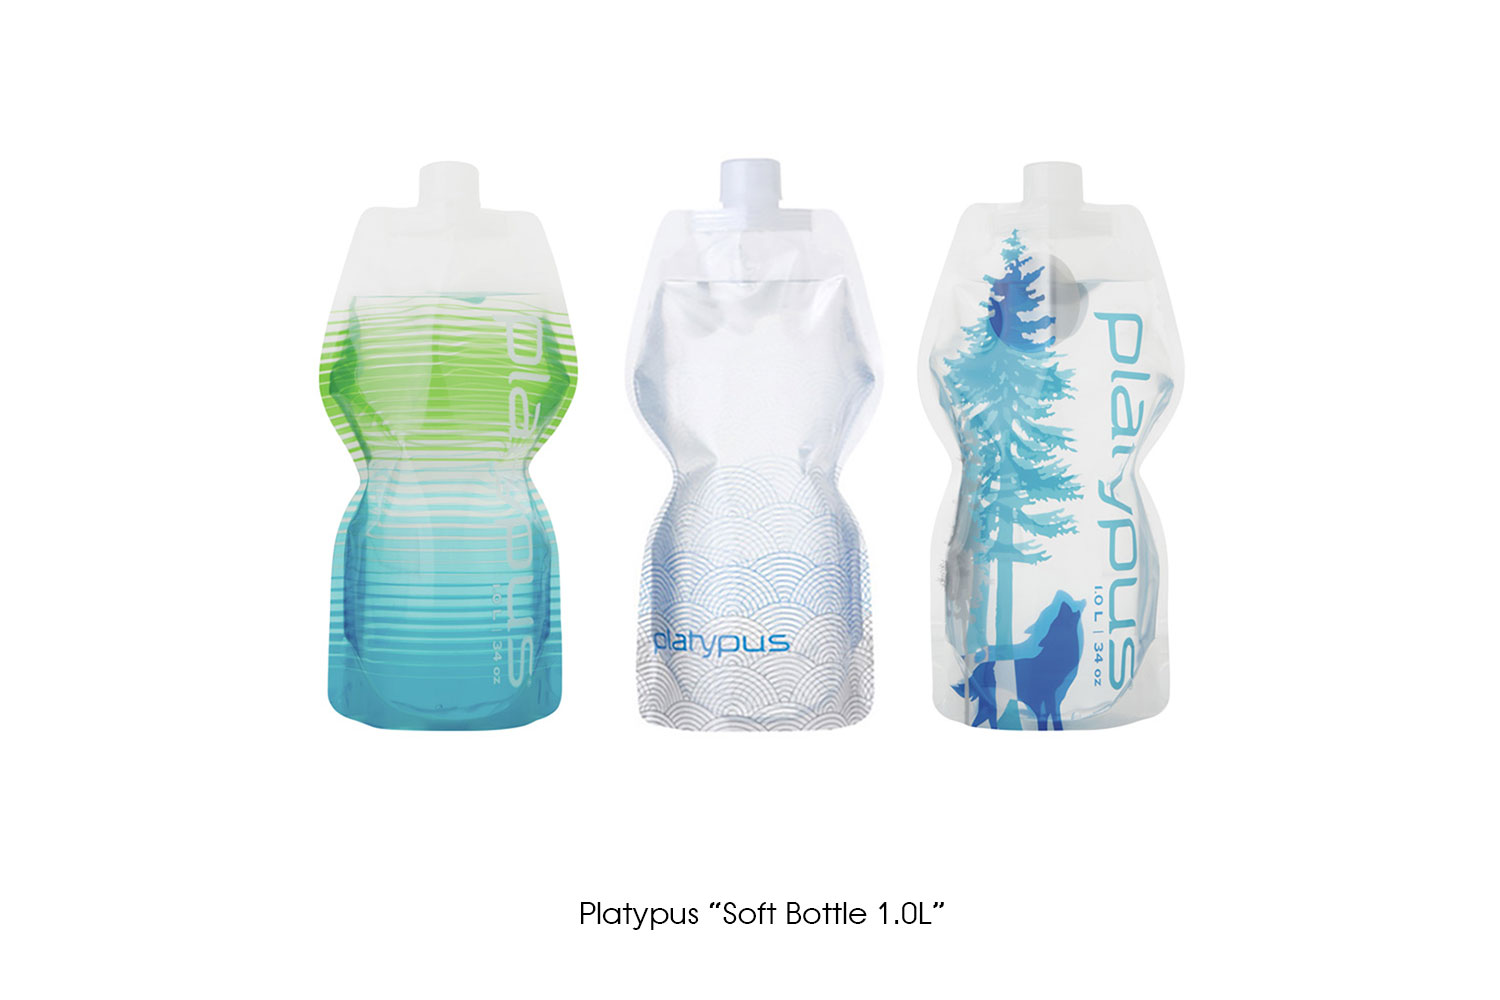 Platypus "Soft Bottle 1.0L"